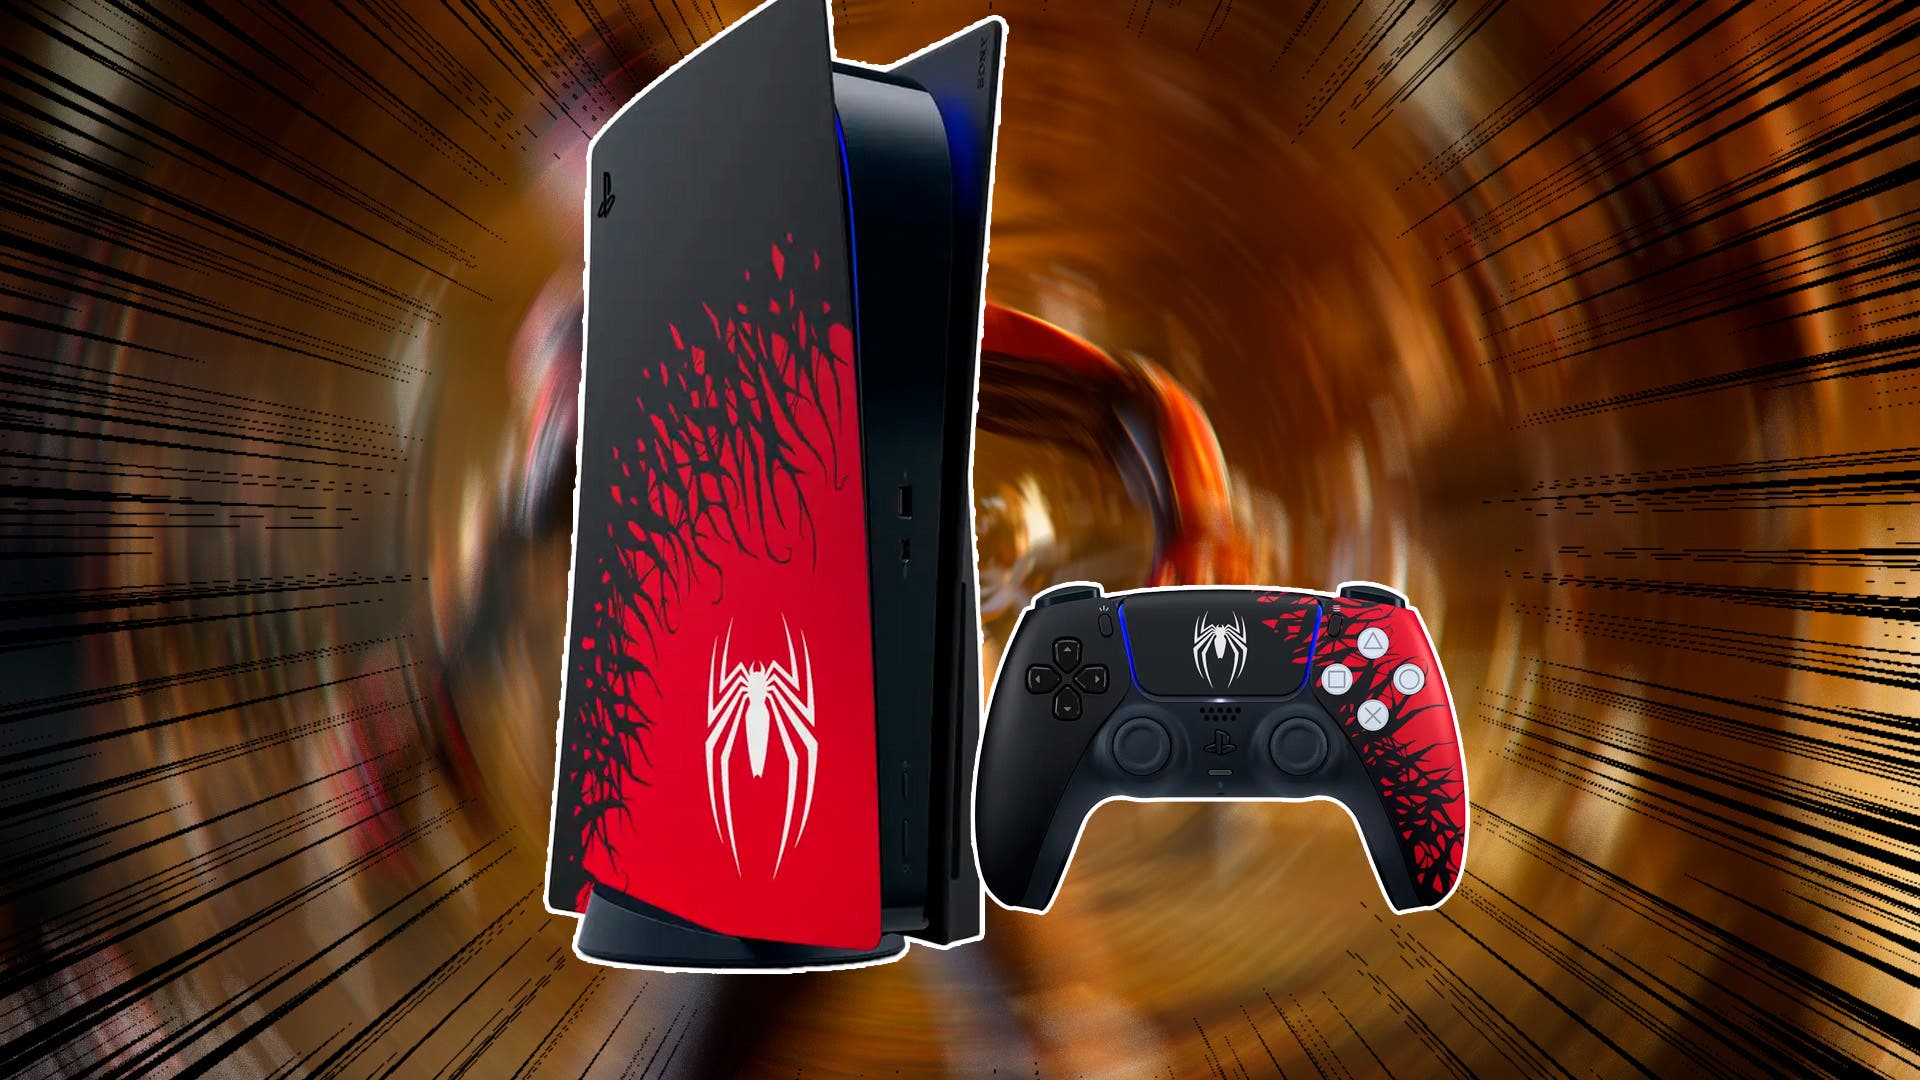 Un fan diseñó un espectacular mando de PS5 basado en Spider-Man 2